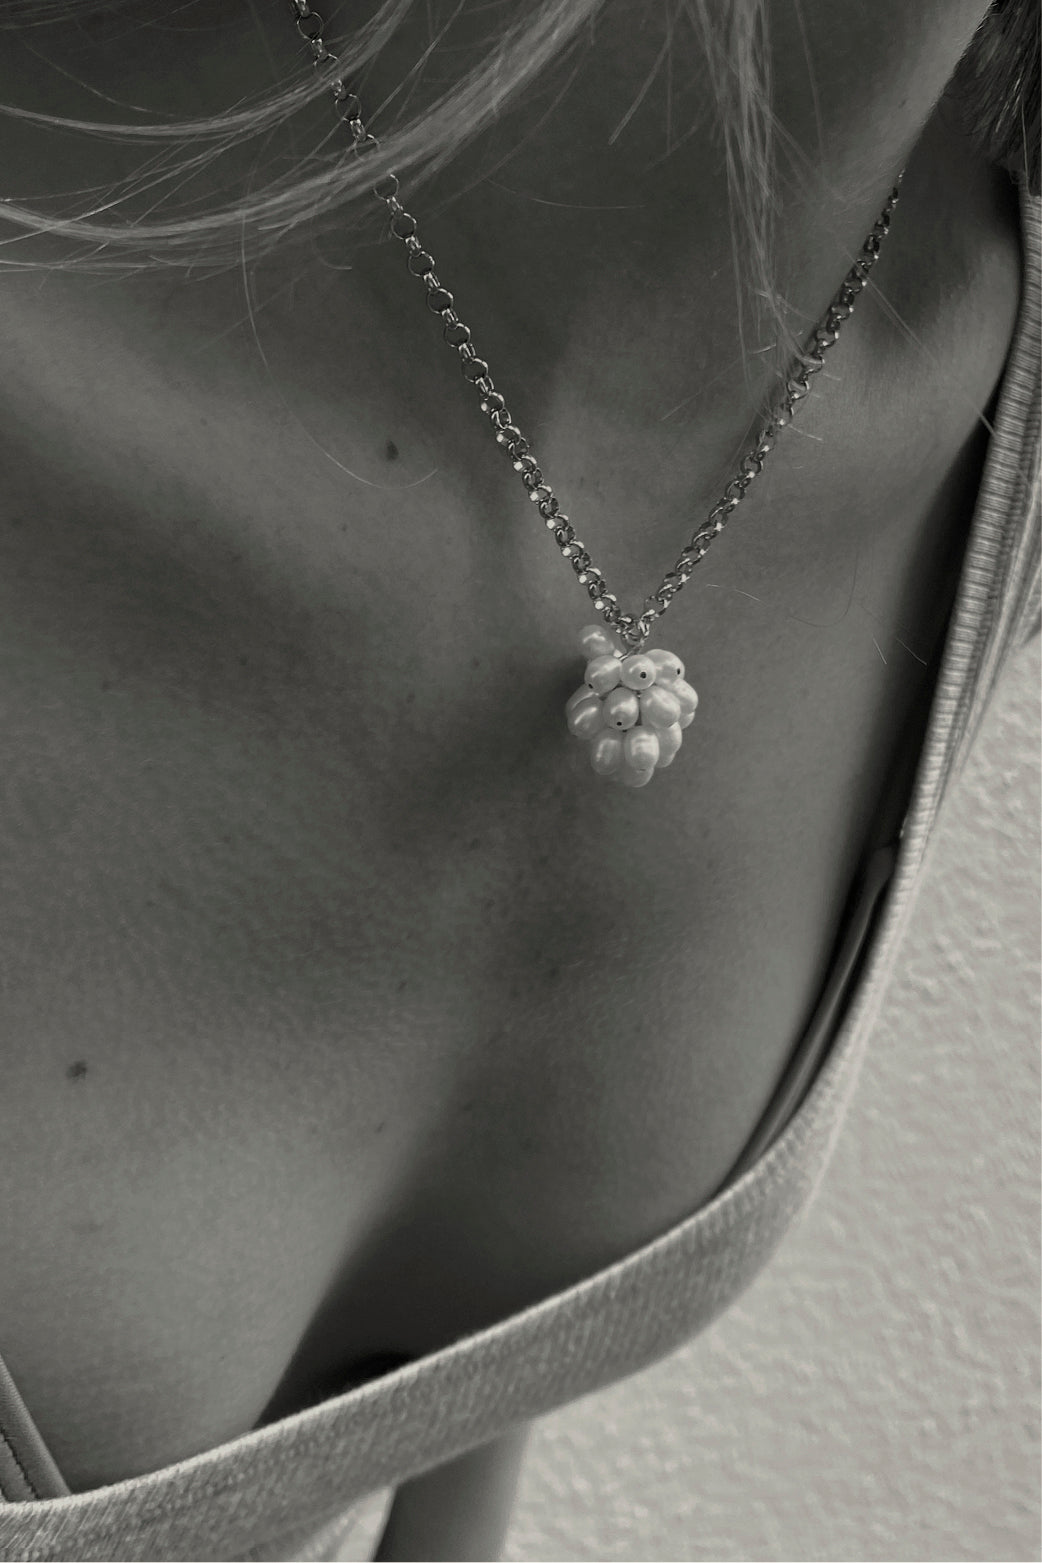 The Dandelion Necklace